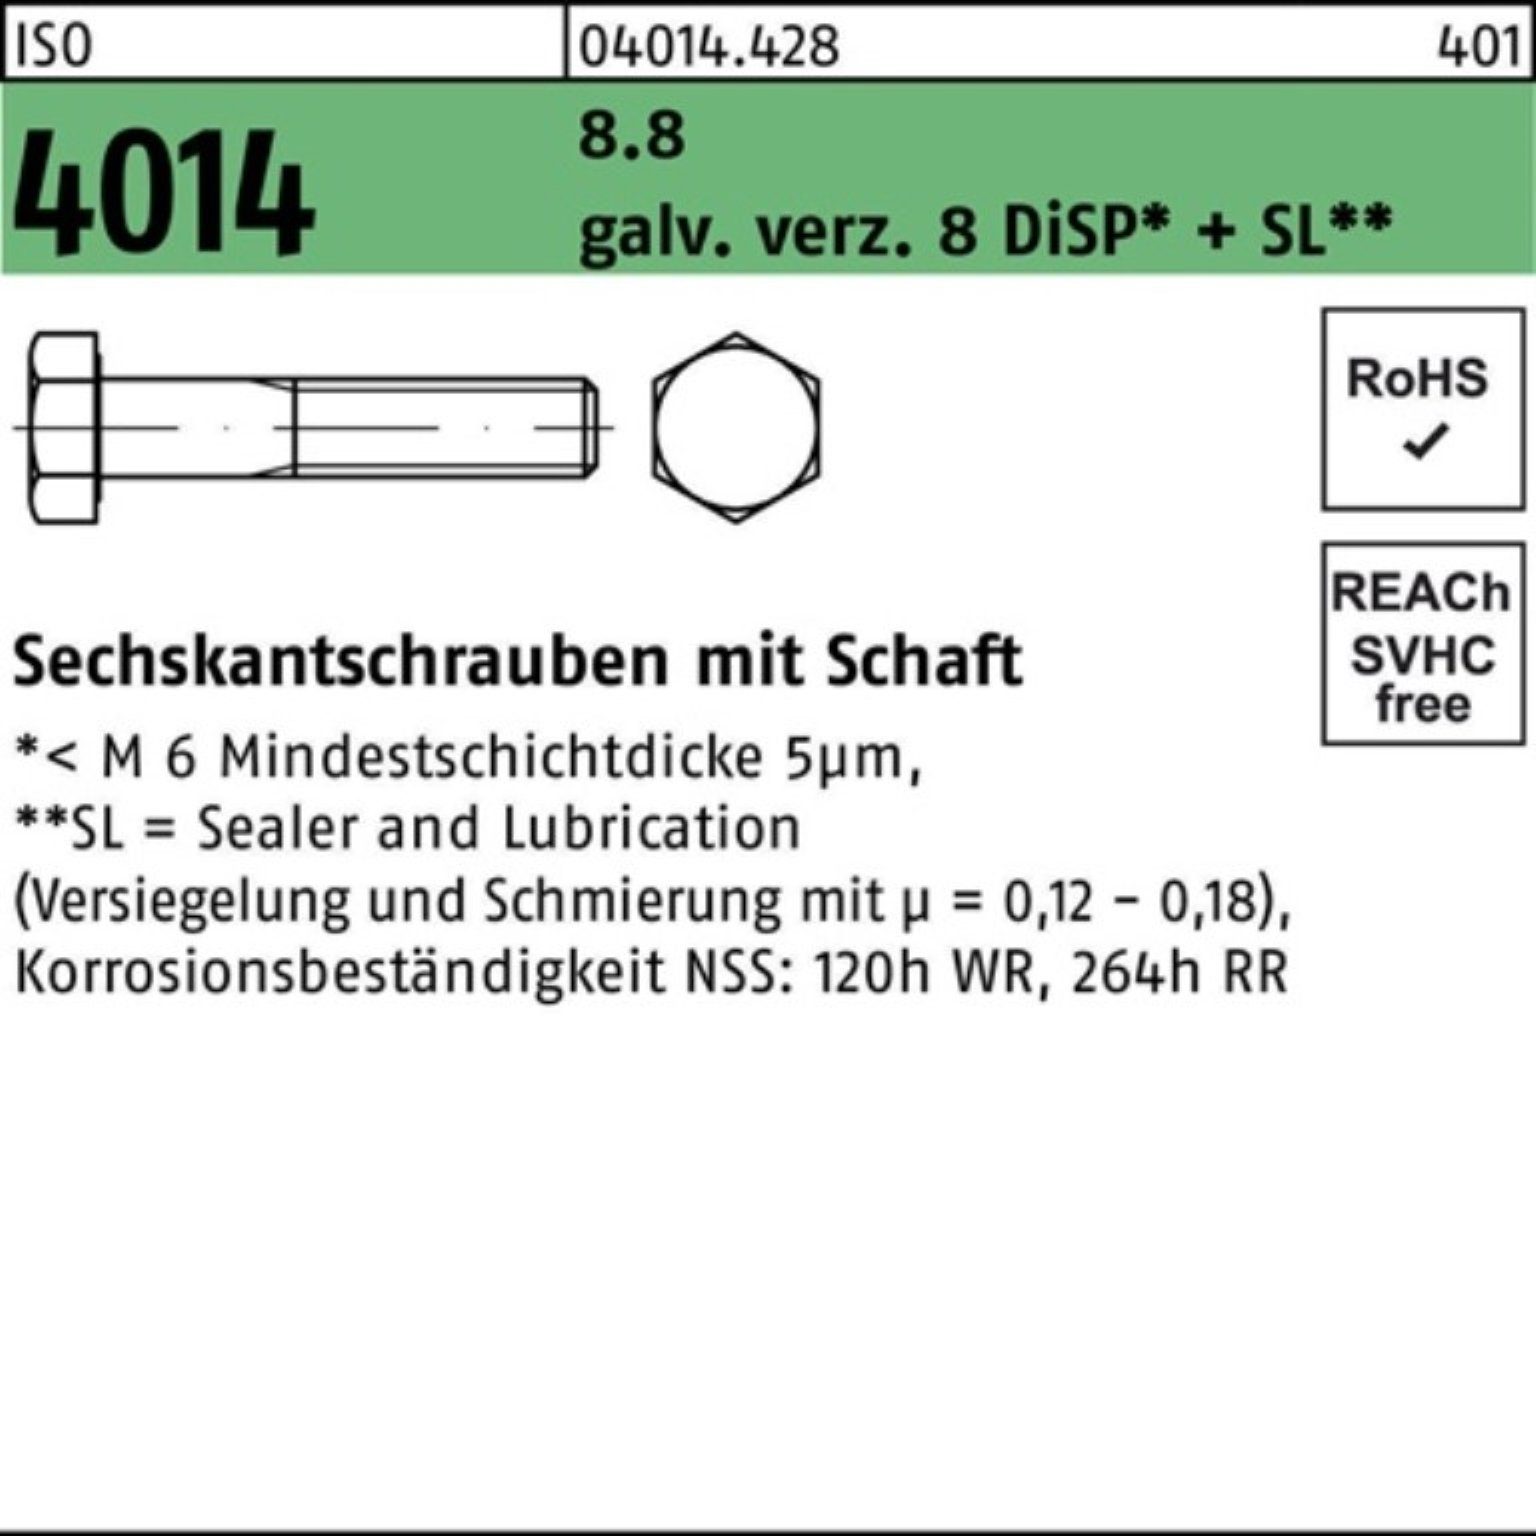 Bufab Sechskantschraube 200er Pack ISO Schaft 4014 M6x40 galv.verz. Di 8 Sechskantschraube 8.8